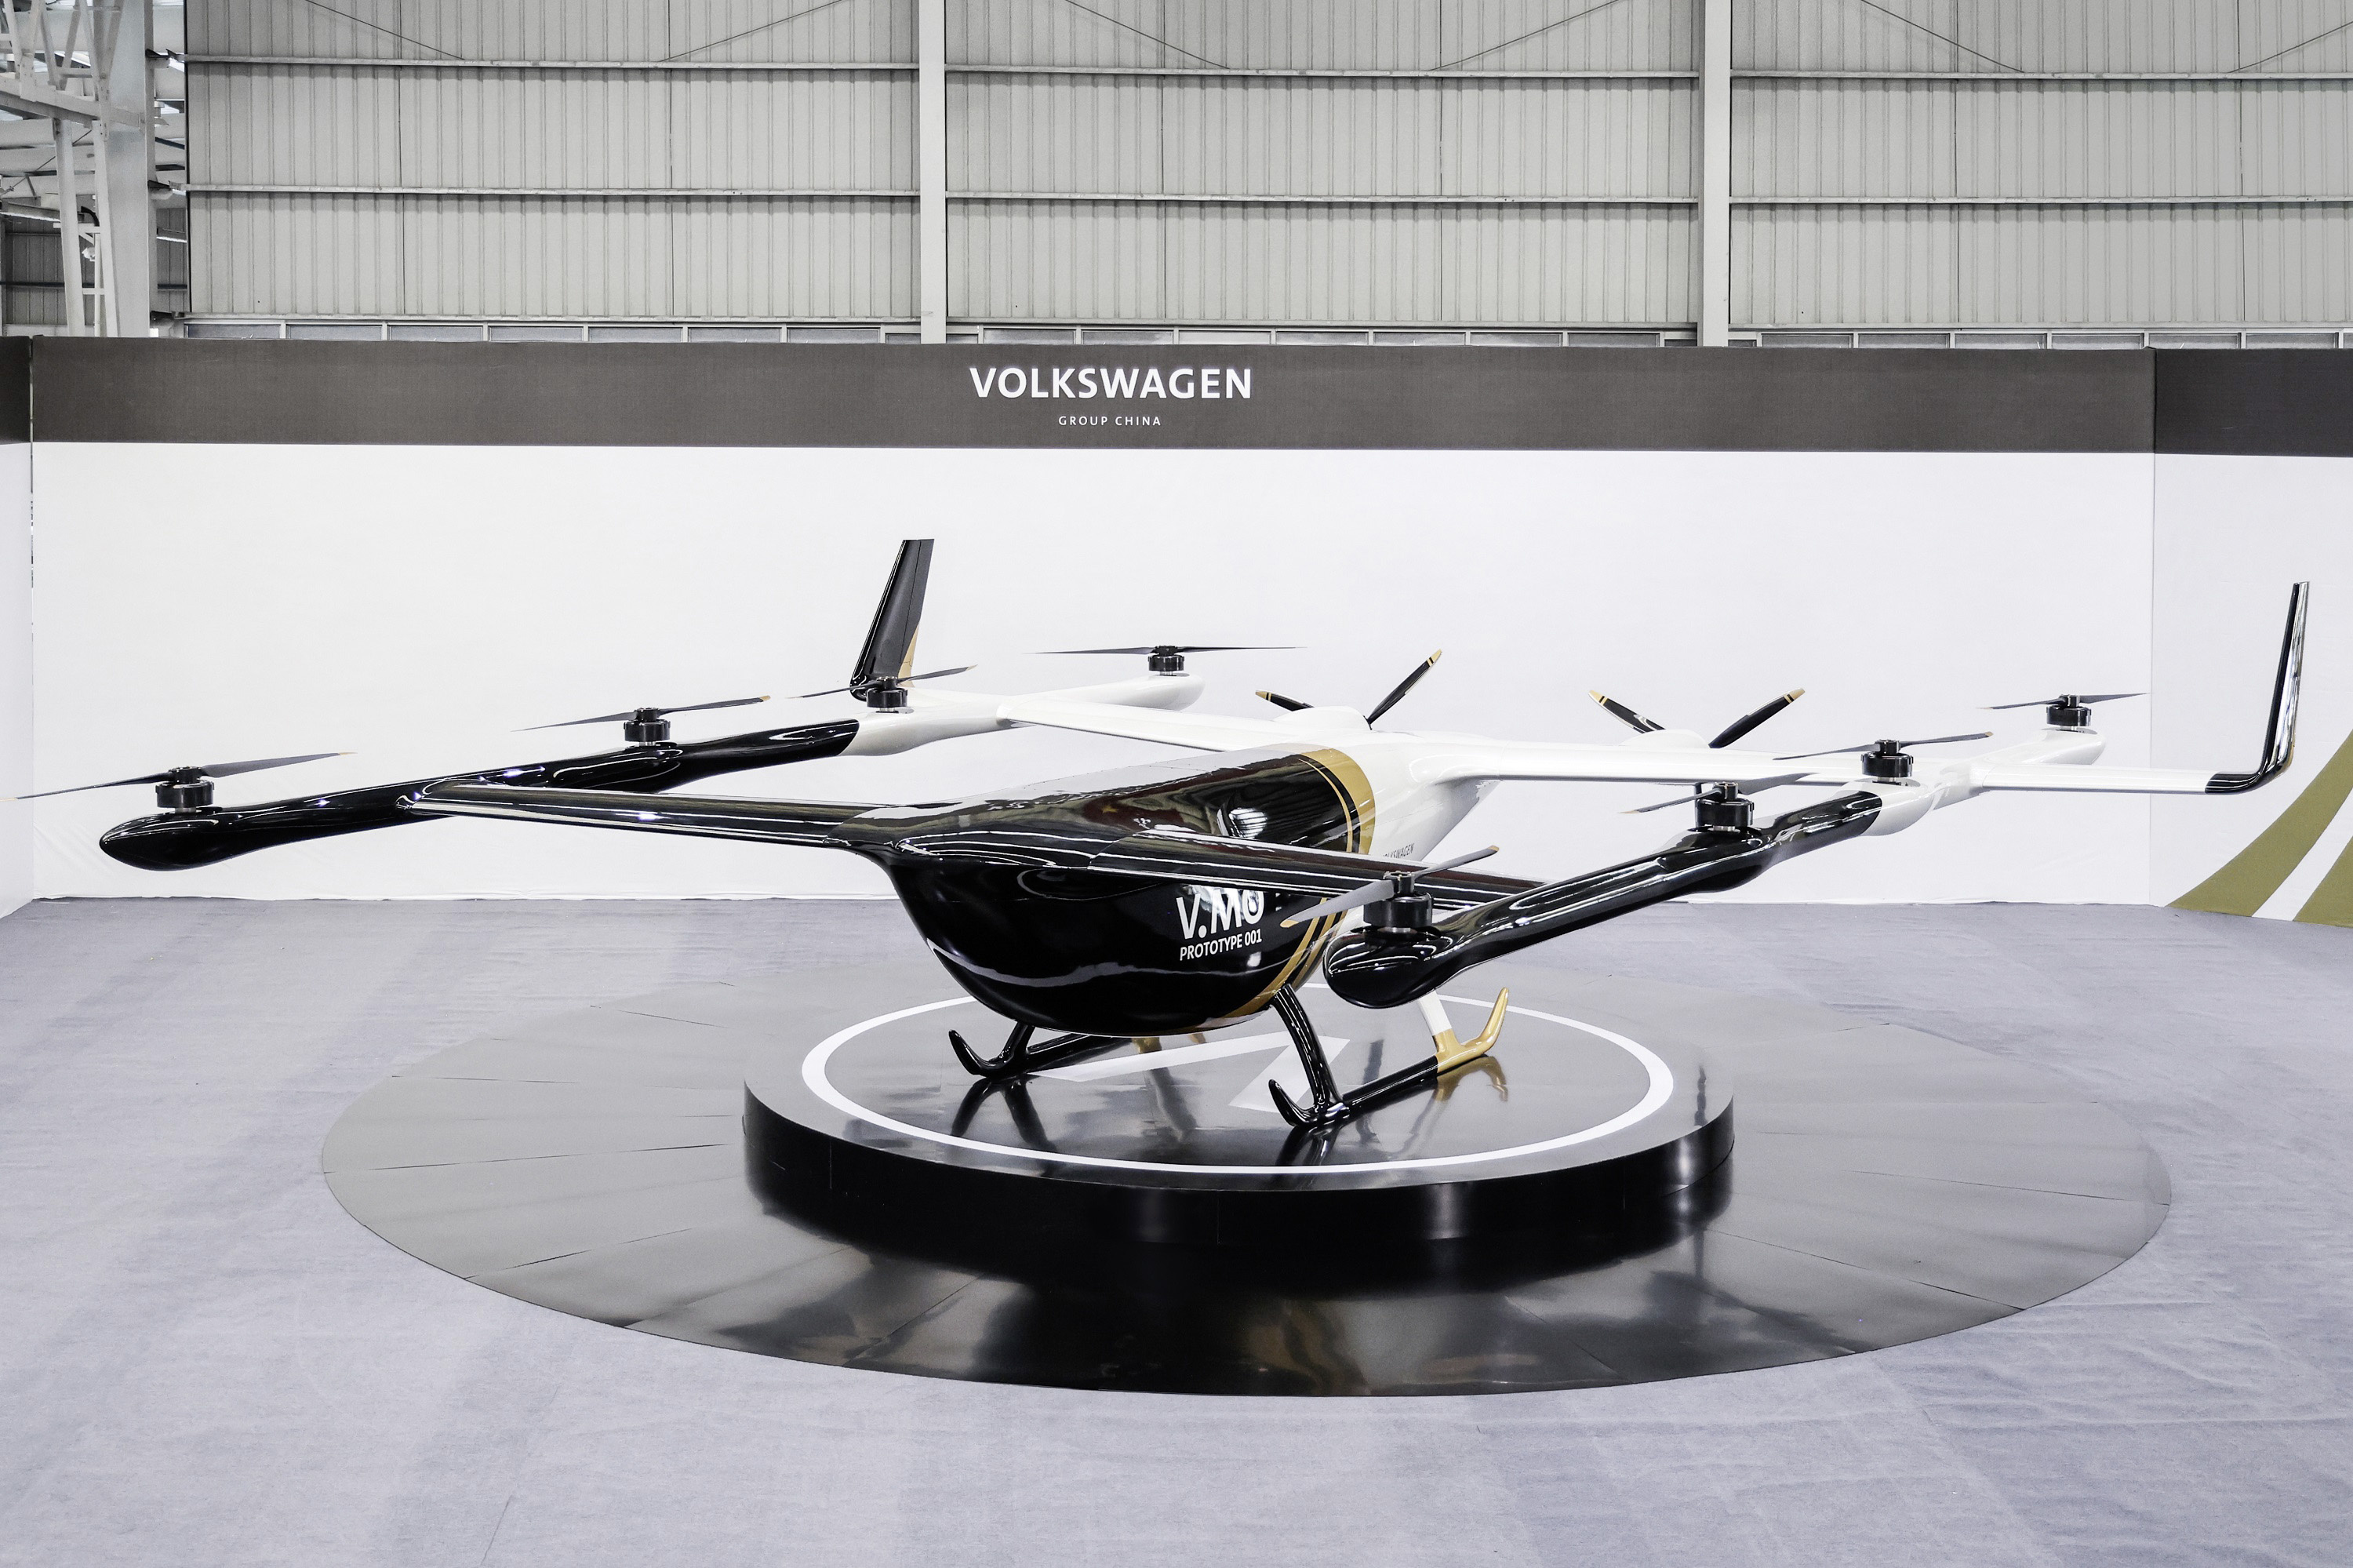 Volkswagen muestra un prototipo de taxi aéreo no tripulado V.MO